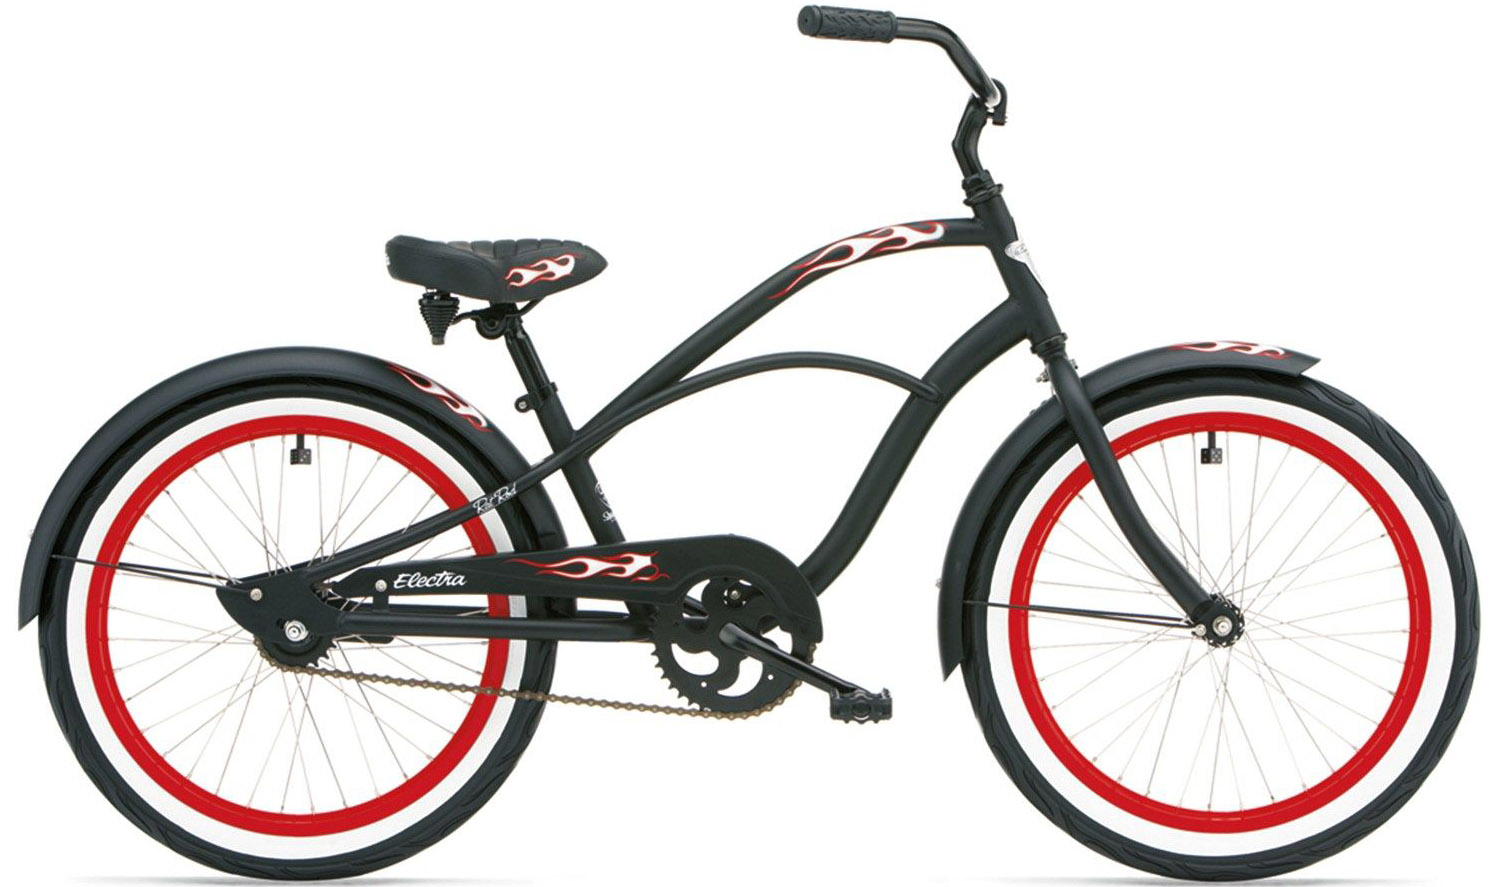  Отзывы о Детском велосипеде Electra Rat Rod 1 2020